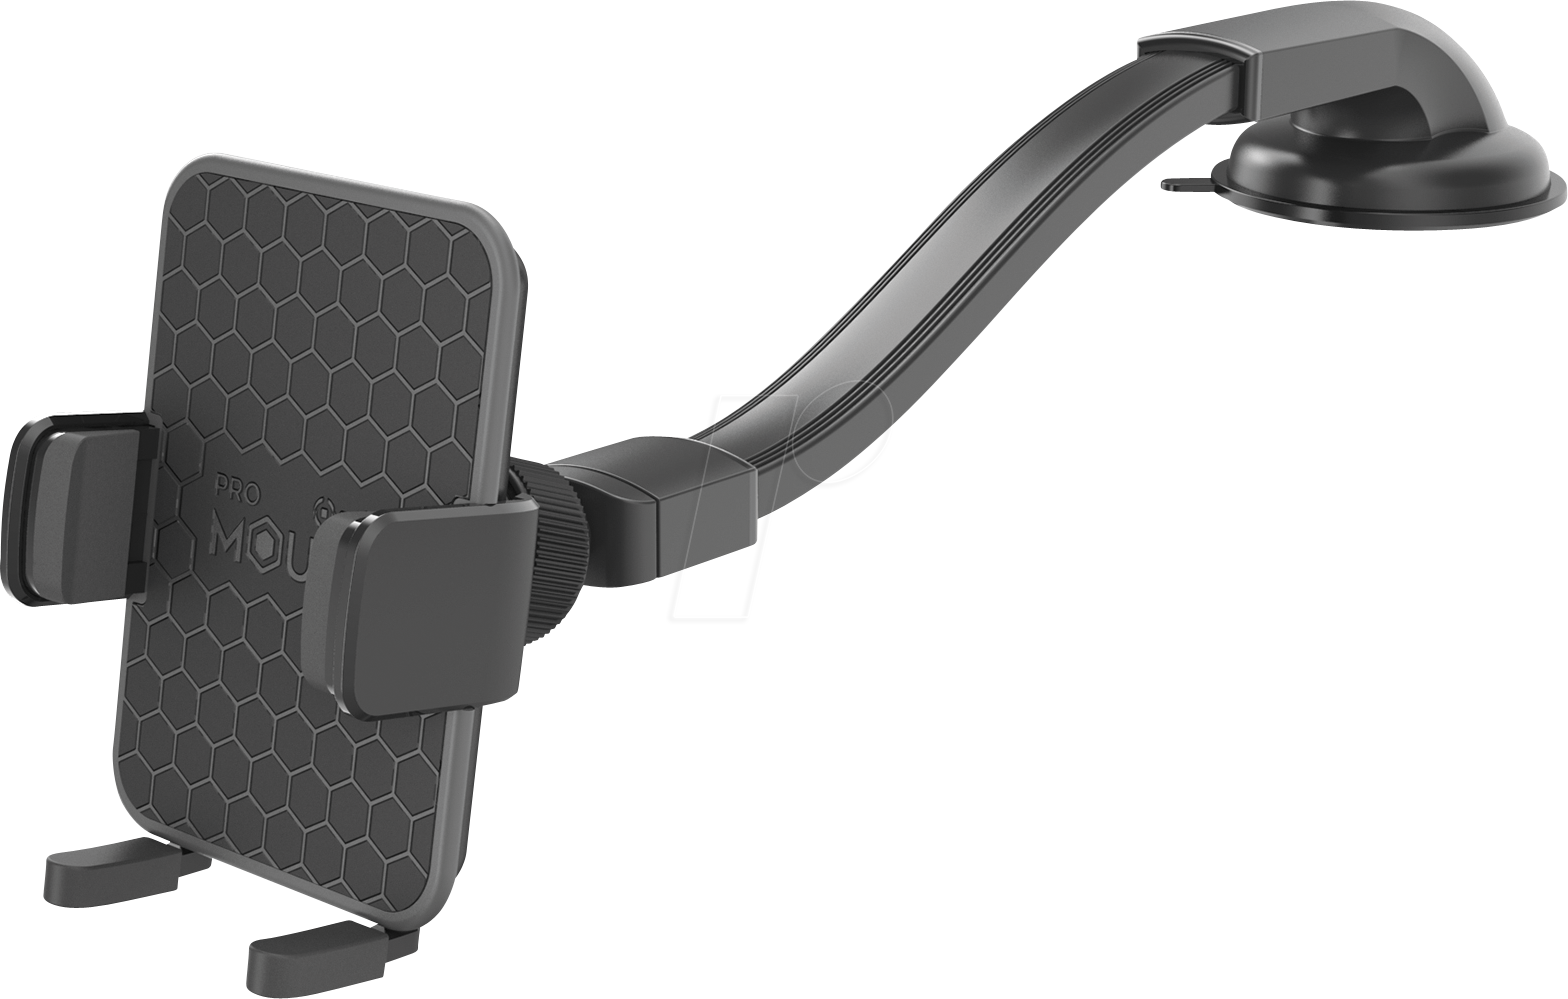 MOUNTFLEXPLUSBK - KFZ - Smartphone-Halter mit Saugfuß, flexibler Arm von Celly